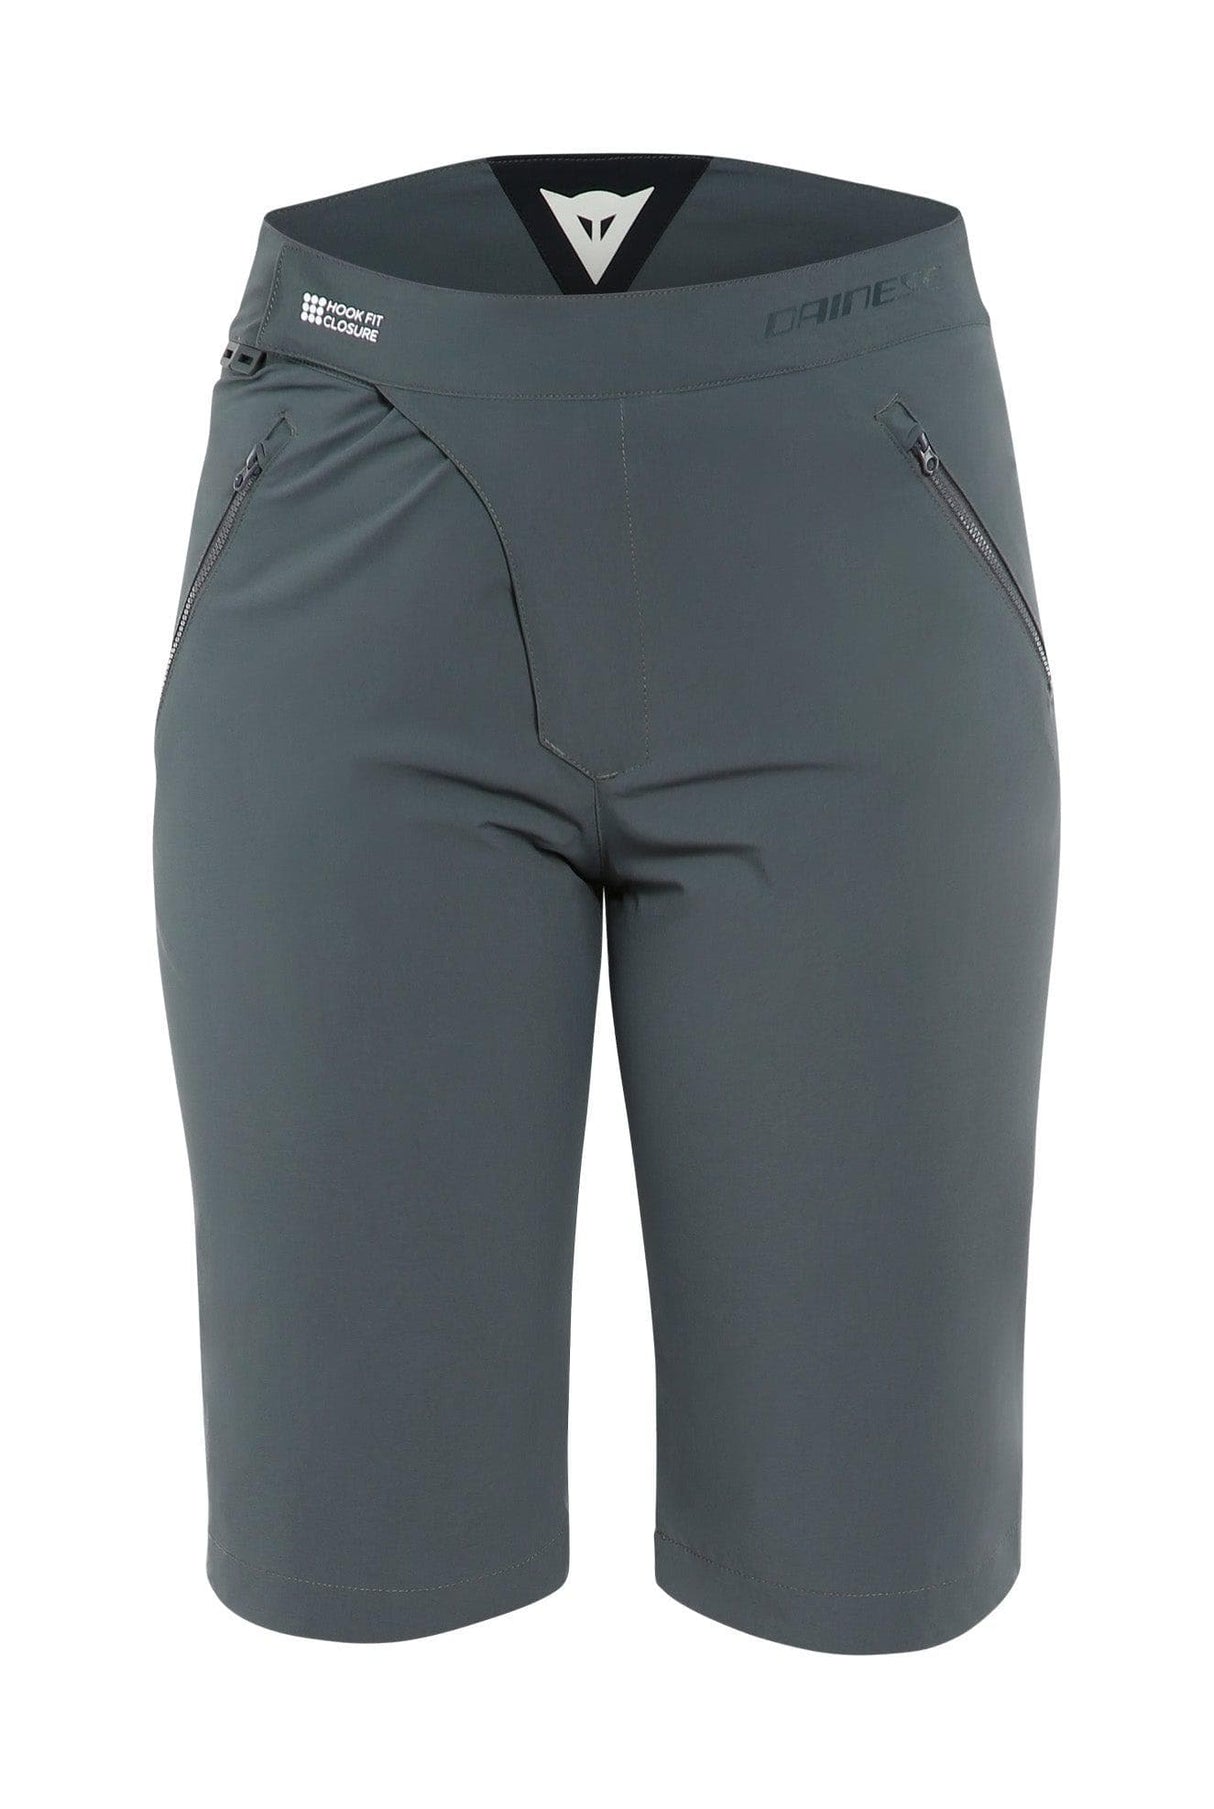 Dainese HG Ipanema Womens Shorts (Dark Grey, S)